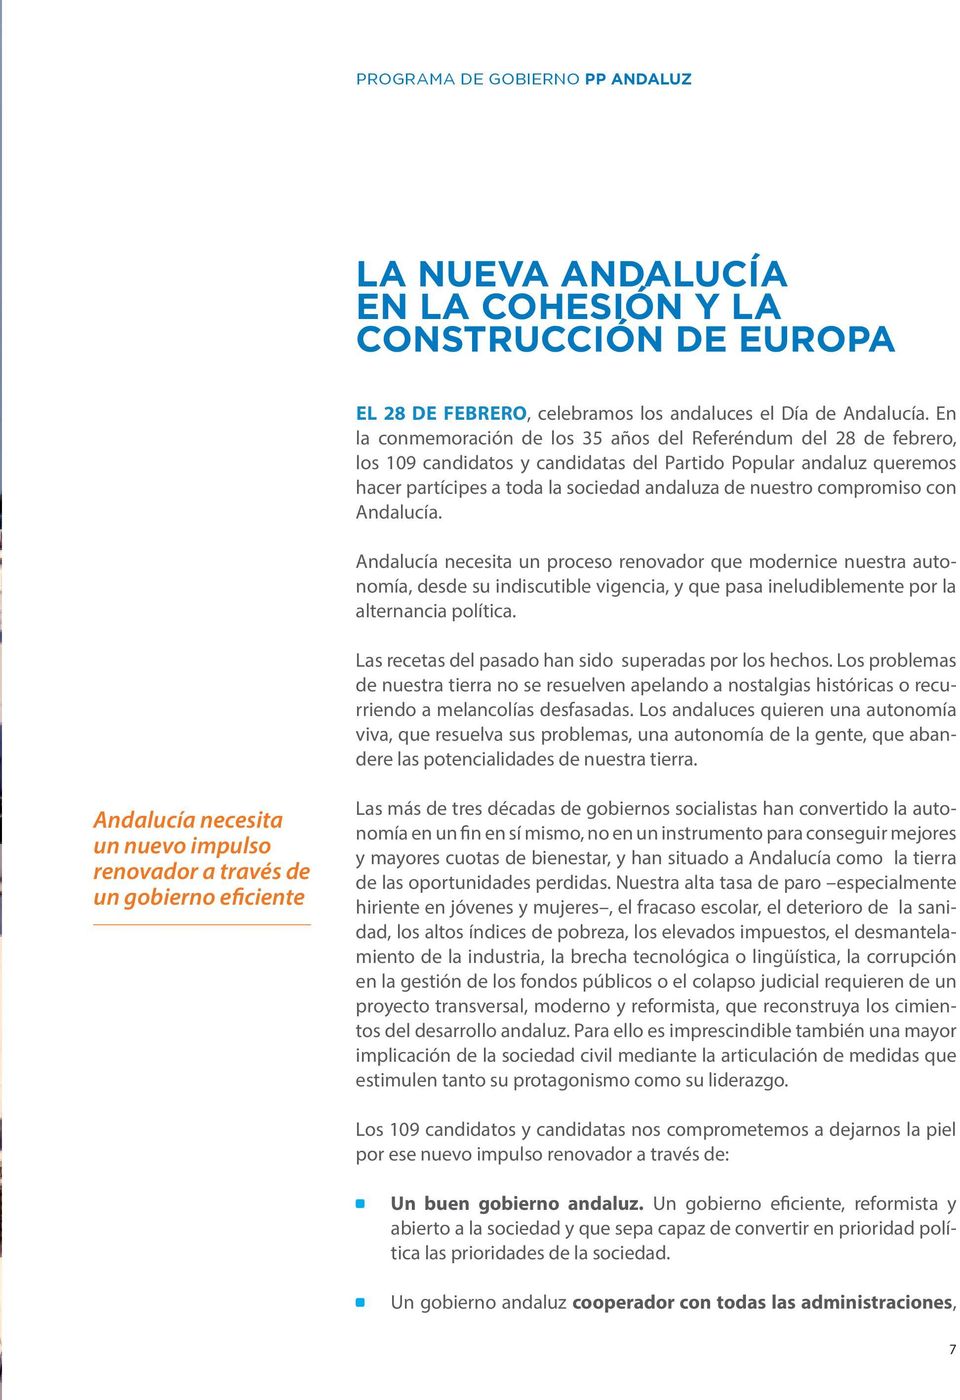 compromiso con Andalucía. Andalucía necesita un proceso renovador que modernice nuestra autonomía, desde su indiscutible vigencia, y que pasa ineludiblemente por la alternancia política.